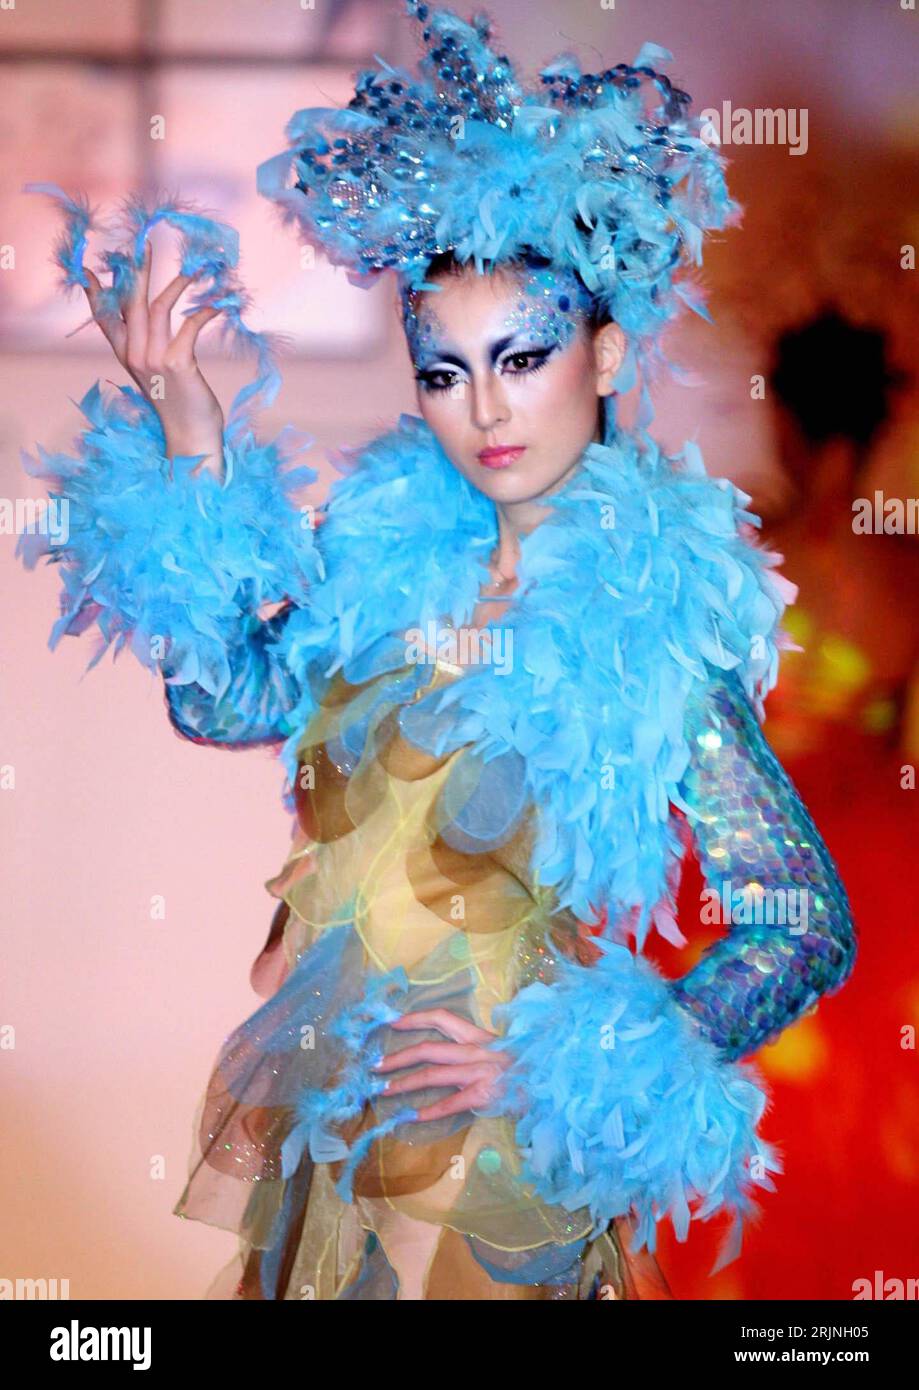 Bildnummer: 50940035 Datum: 06.10.2005 Copyright: imago/Xinhua Asiatisches  Model mit Discokugelhut präsentiert eine ausgefallene Kreation des  chinesischen Make-up-Artists Mao Geping anlässlich einer Präsentation der  neuen Herbst-Winter-Make-up-Trends